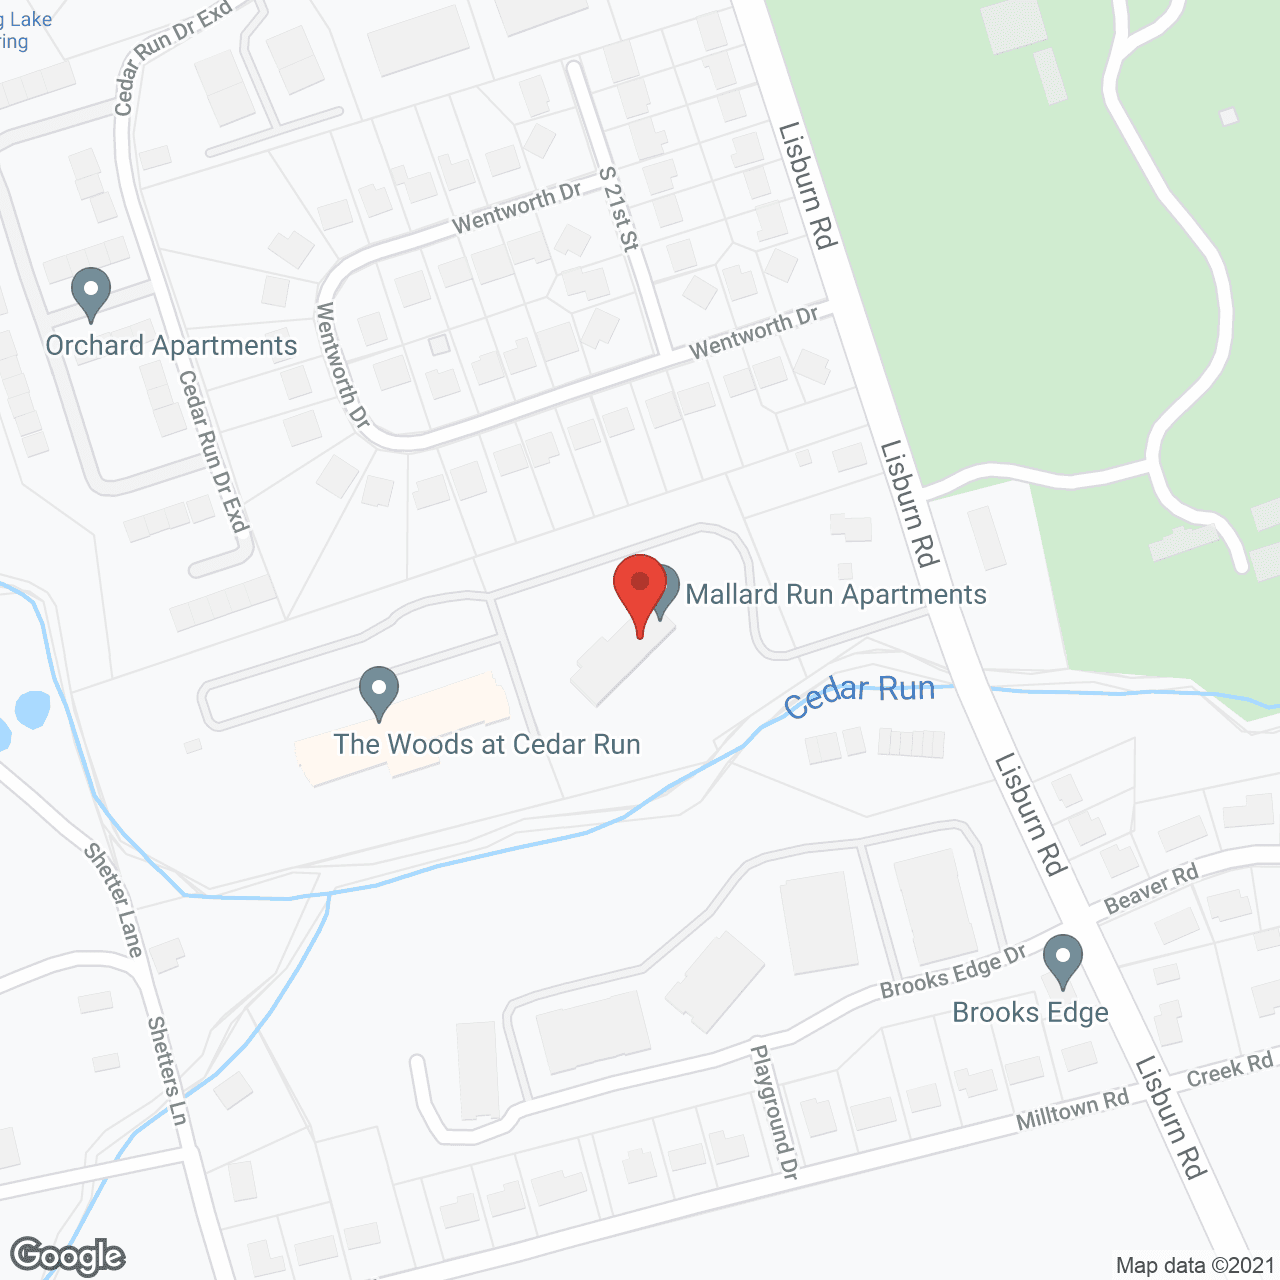 Mallard Run Apartments in google map